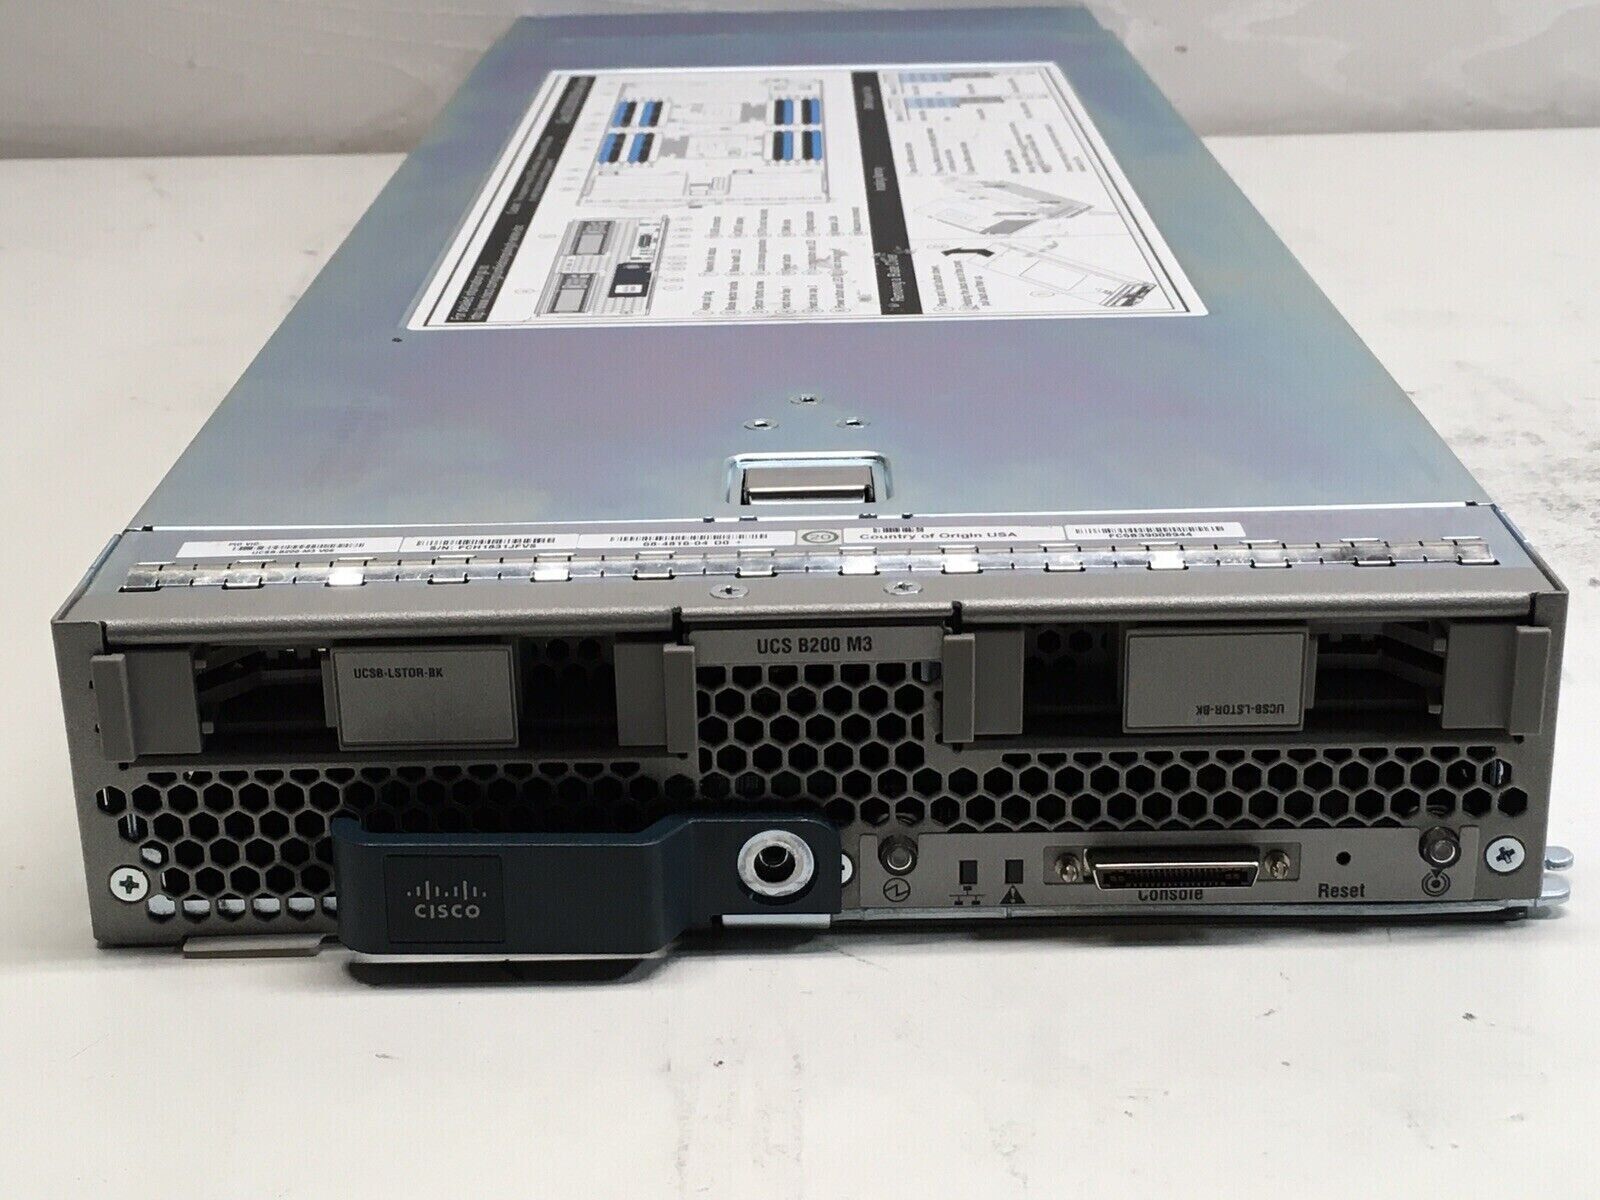 Cisco UCS B200 M3 2 Bay Blade Server 384GB RAM /2x E5-2680V2 @2.80GHZ CPU/NO HDD